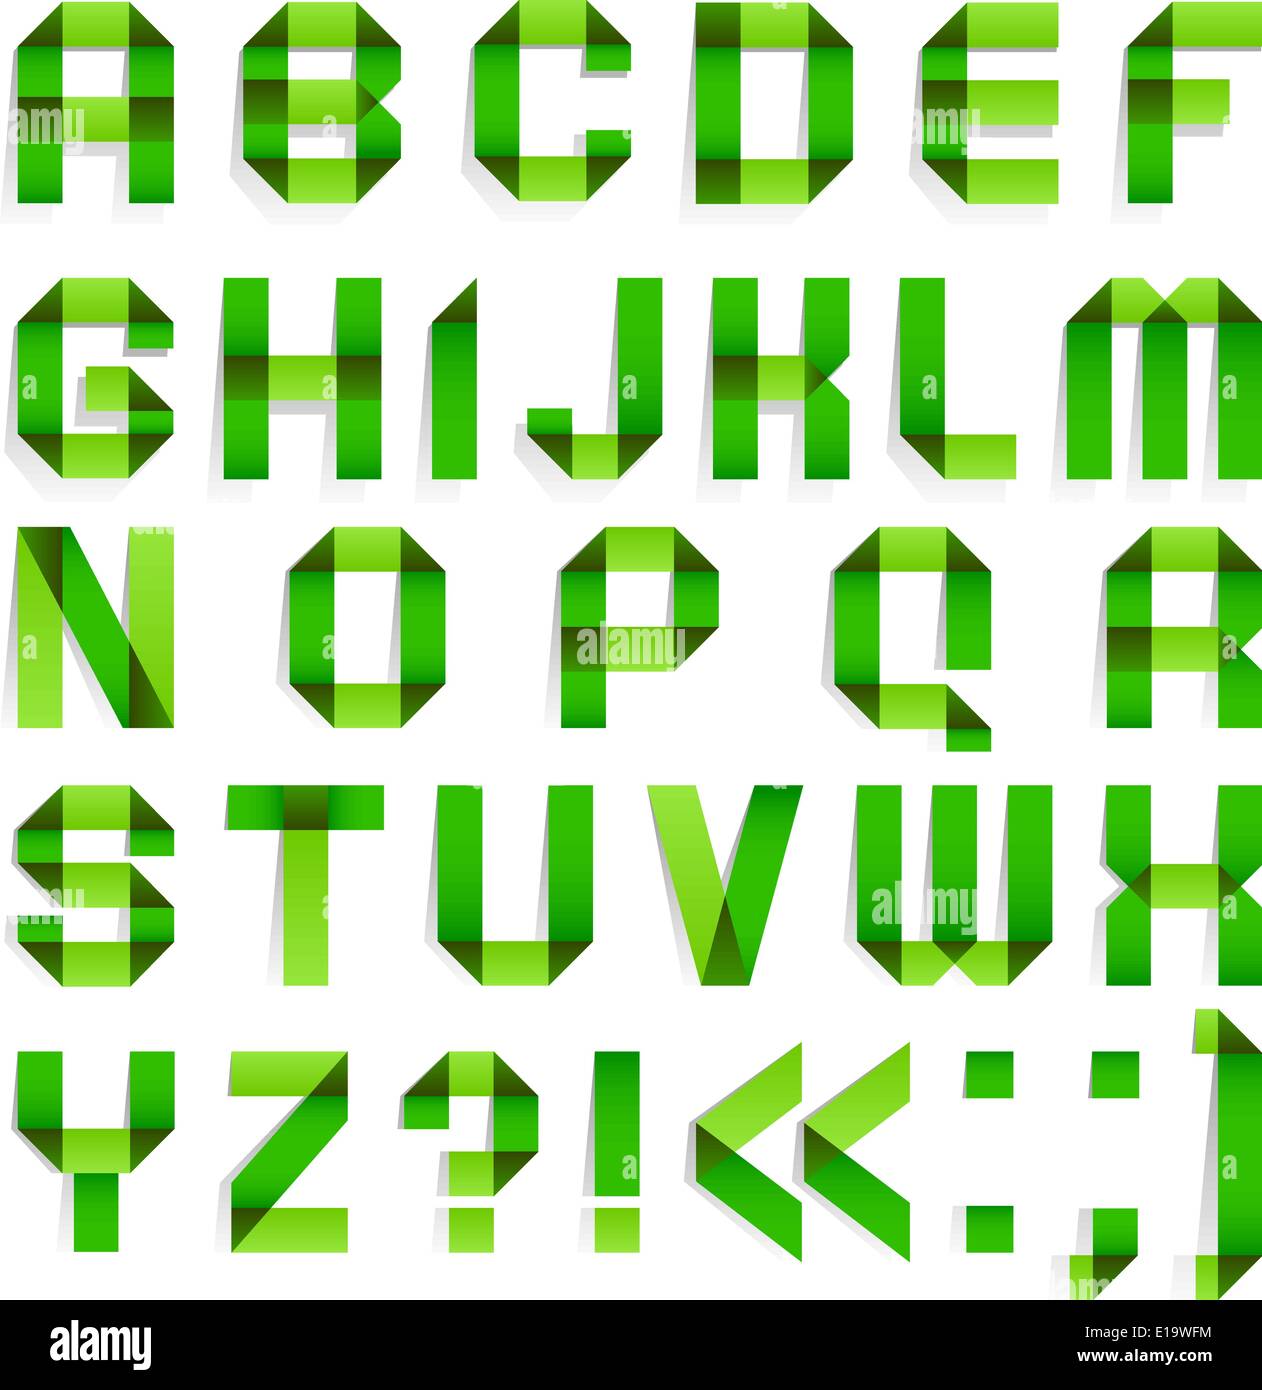 Papier plié Alphabet - lettres vertes. L'alphabet romain (A, B, C, D, E, F, G, H, I, J, K, L, M, N, O, P, Q, R, S, T, U, V, W, X, Y Illustration de Vecteur